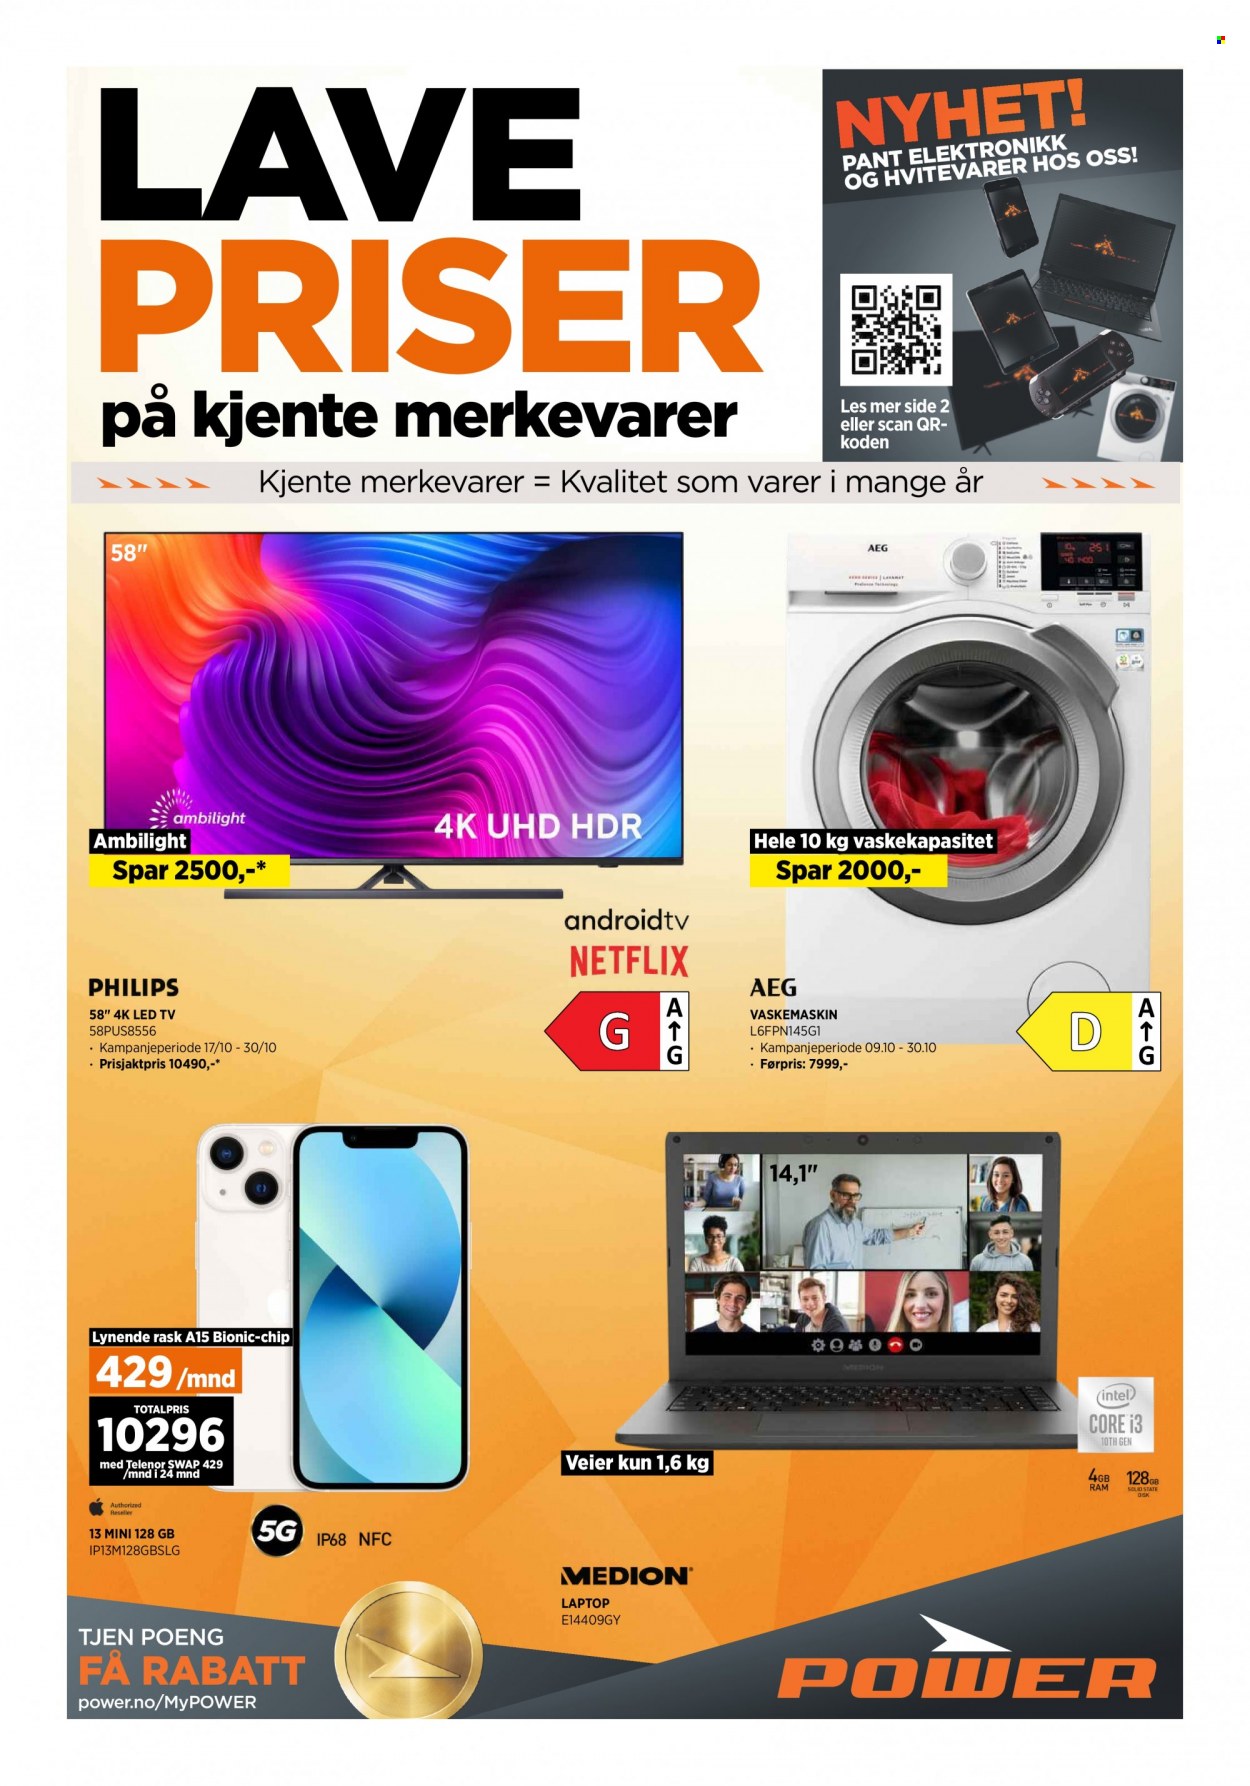 thumbnail - Kundeavis Power - 23.10.2021 - 30.10.2021 - Produkter fra tilbudsaviser - Philips, LED TV, laptop, vaskemaskin. Side 1.